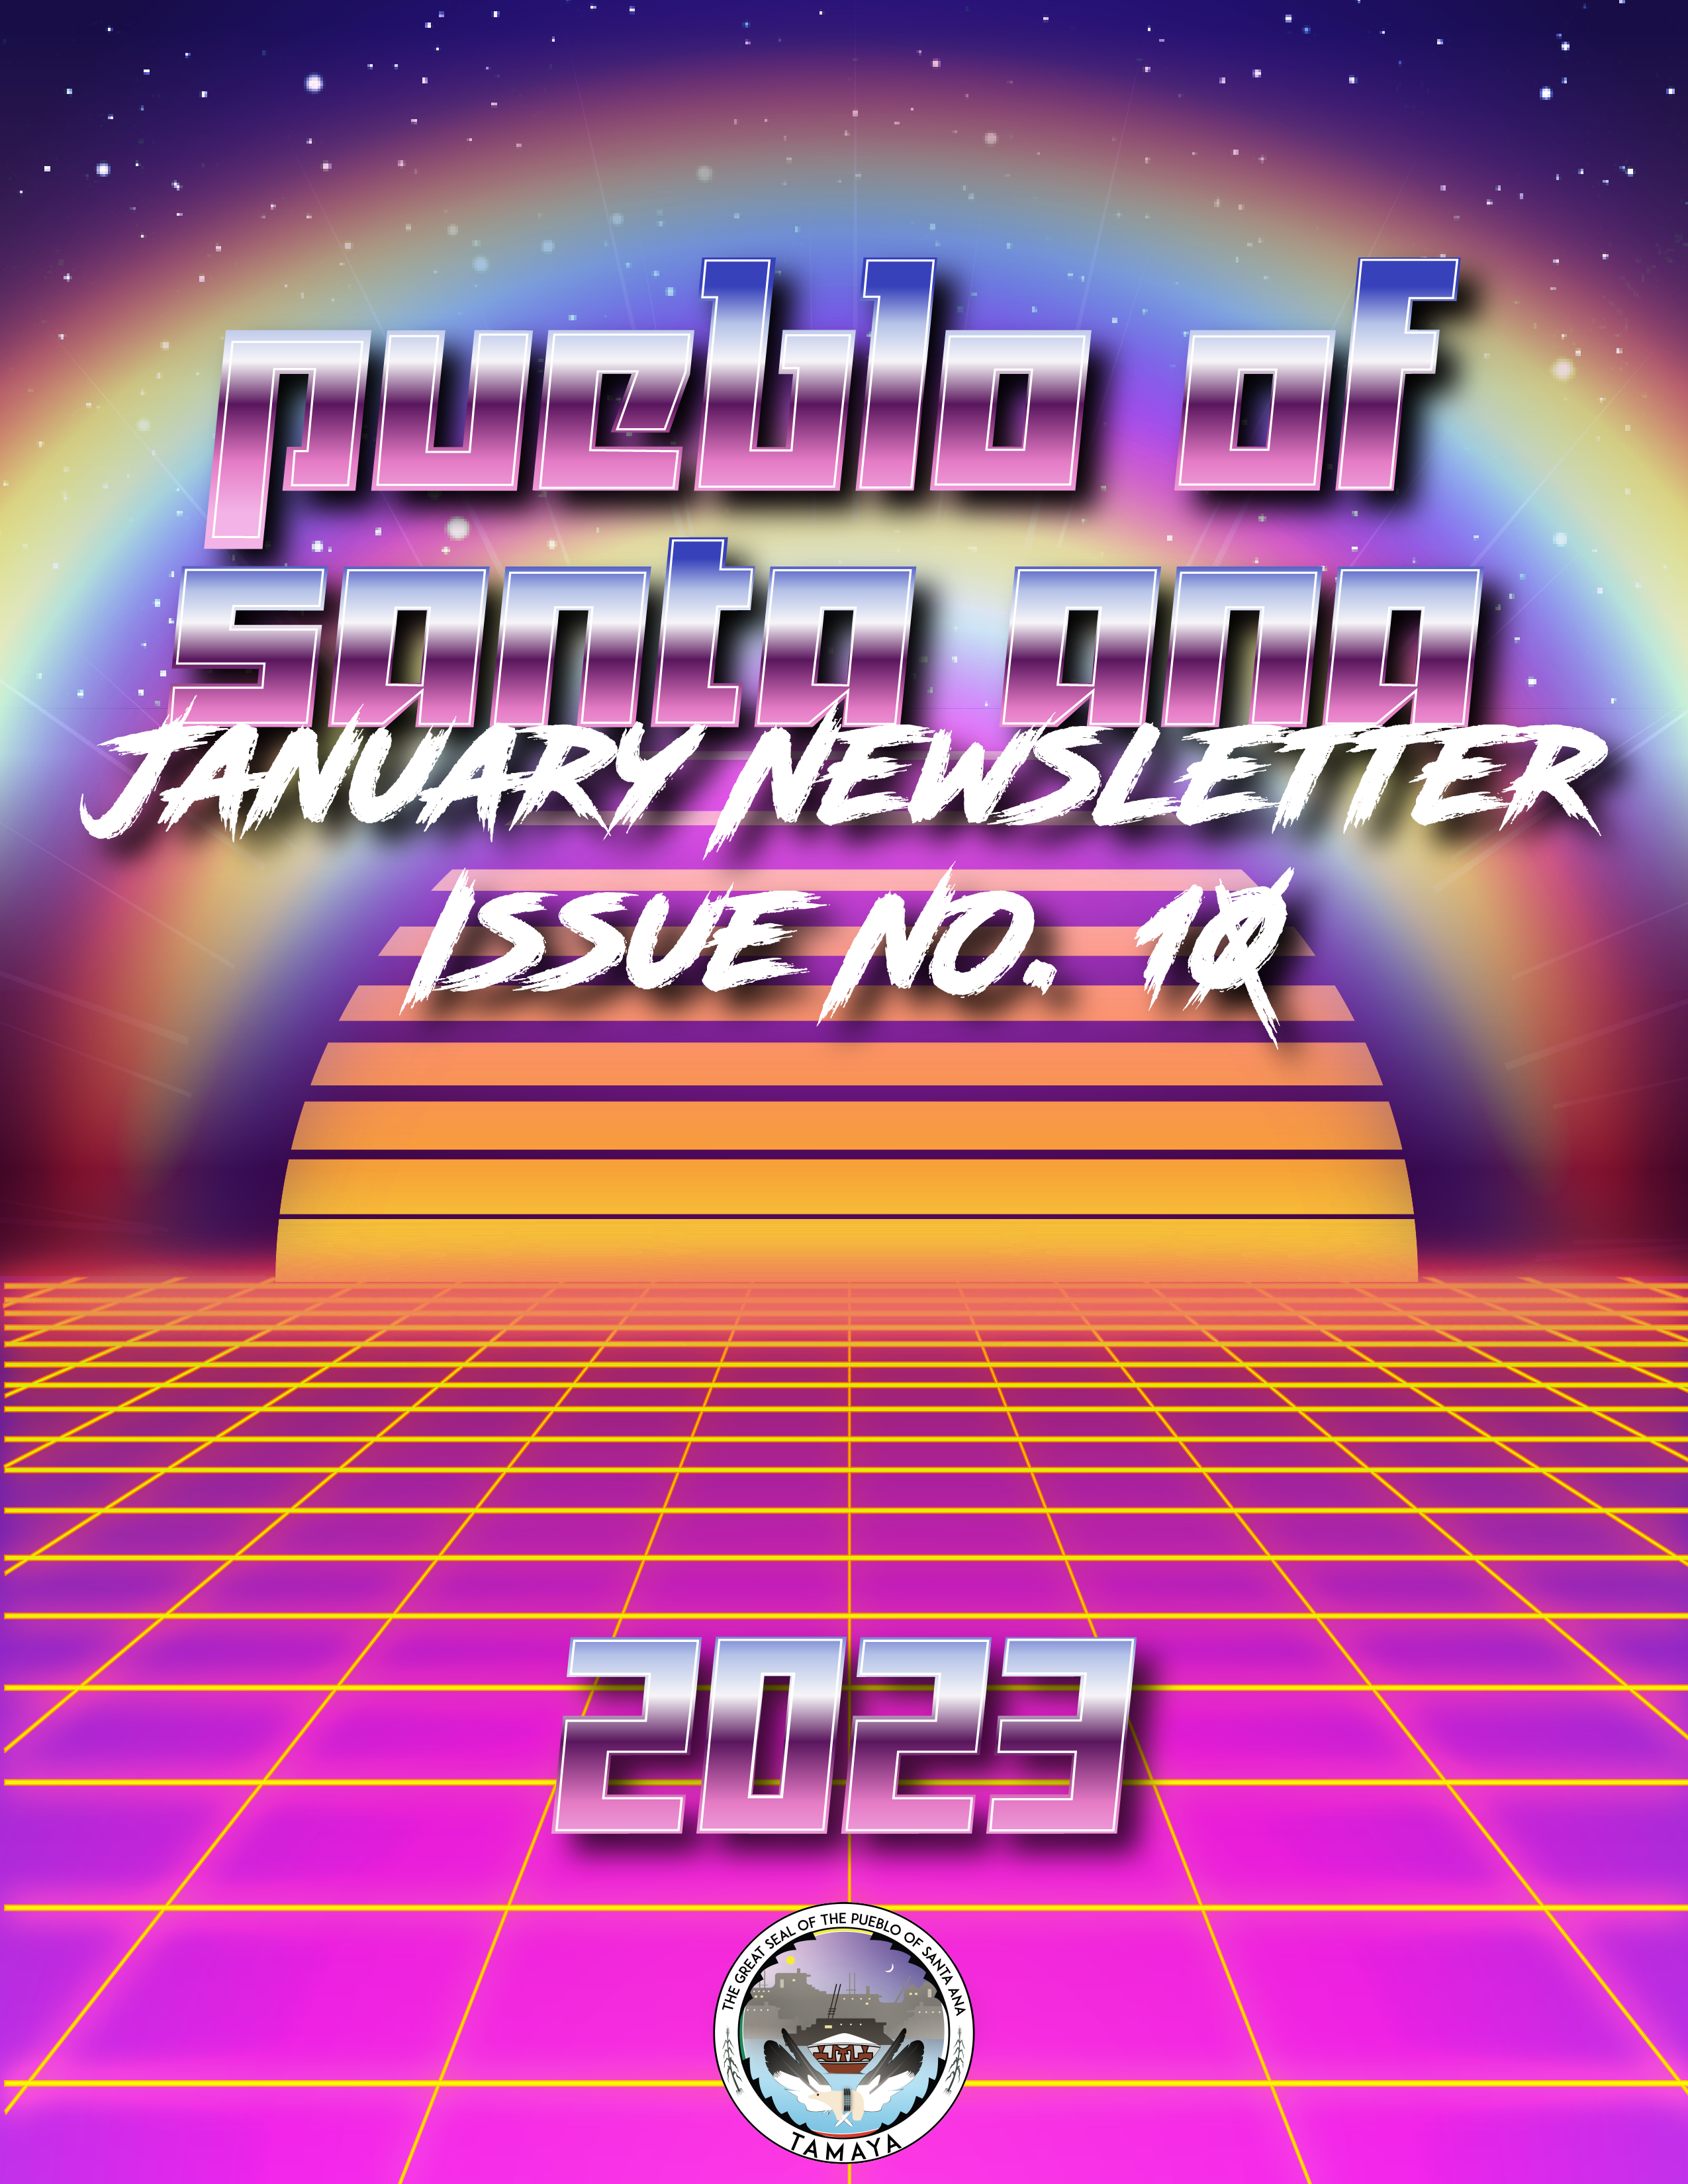 December Newletter 2022